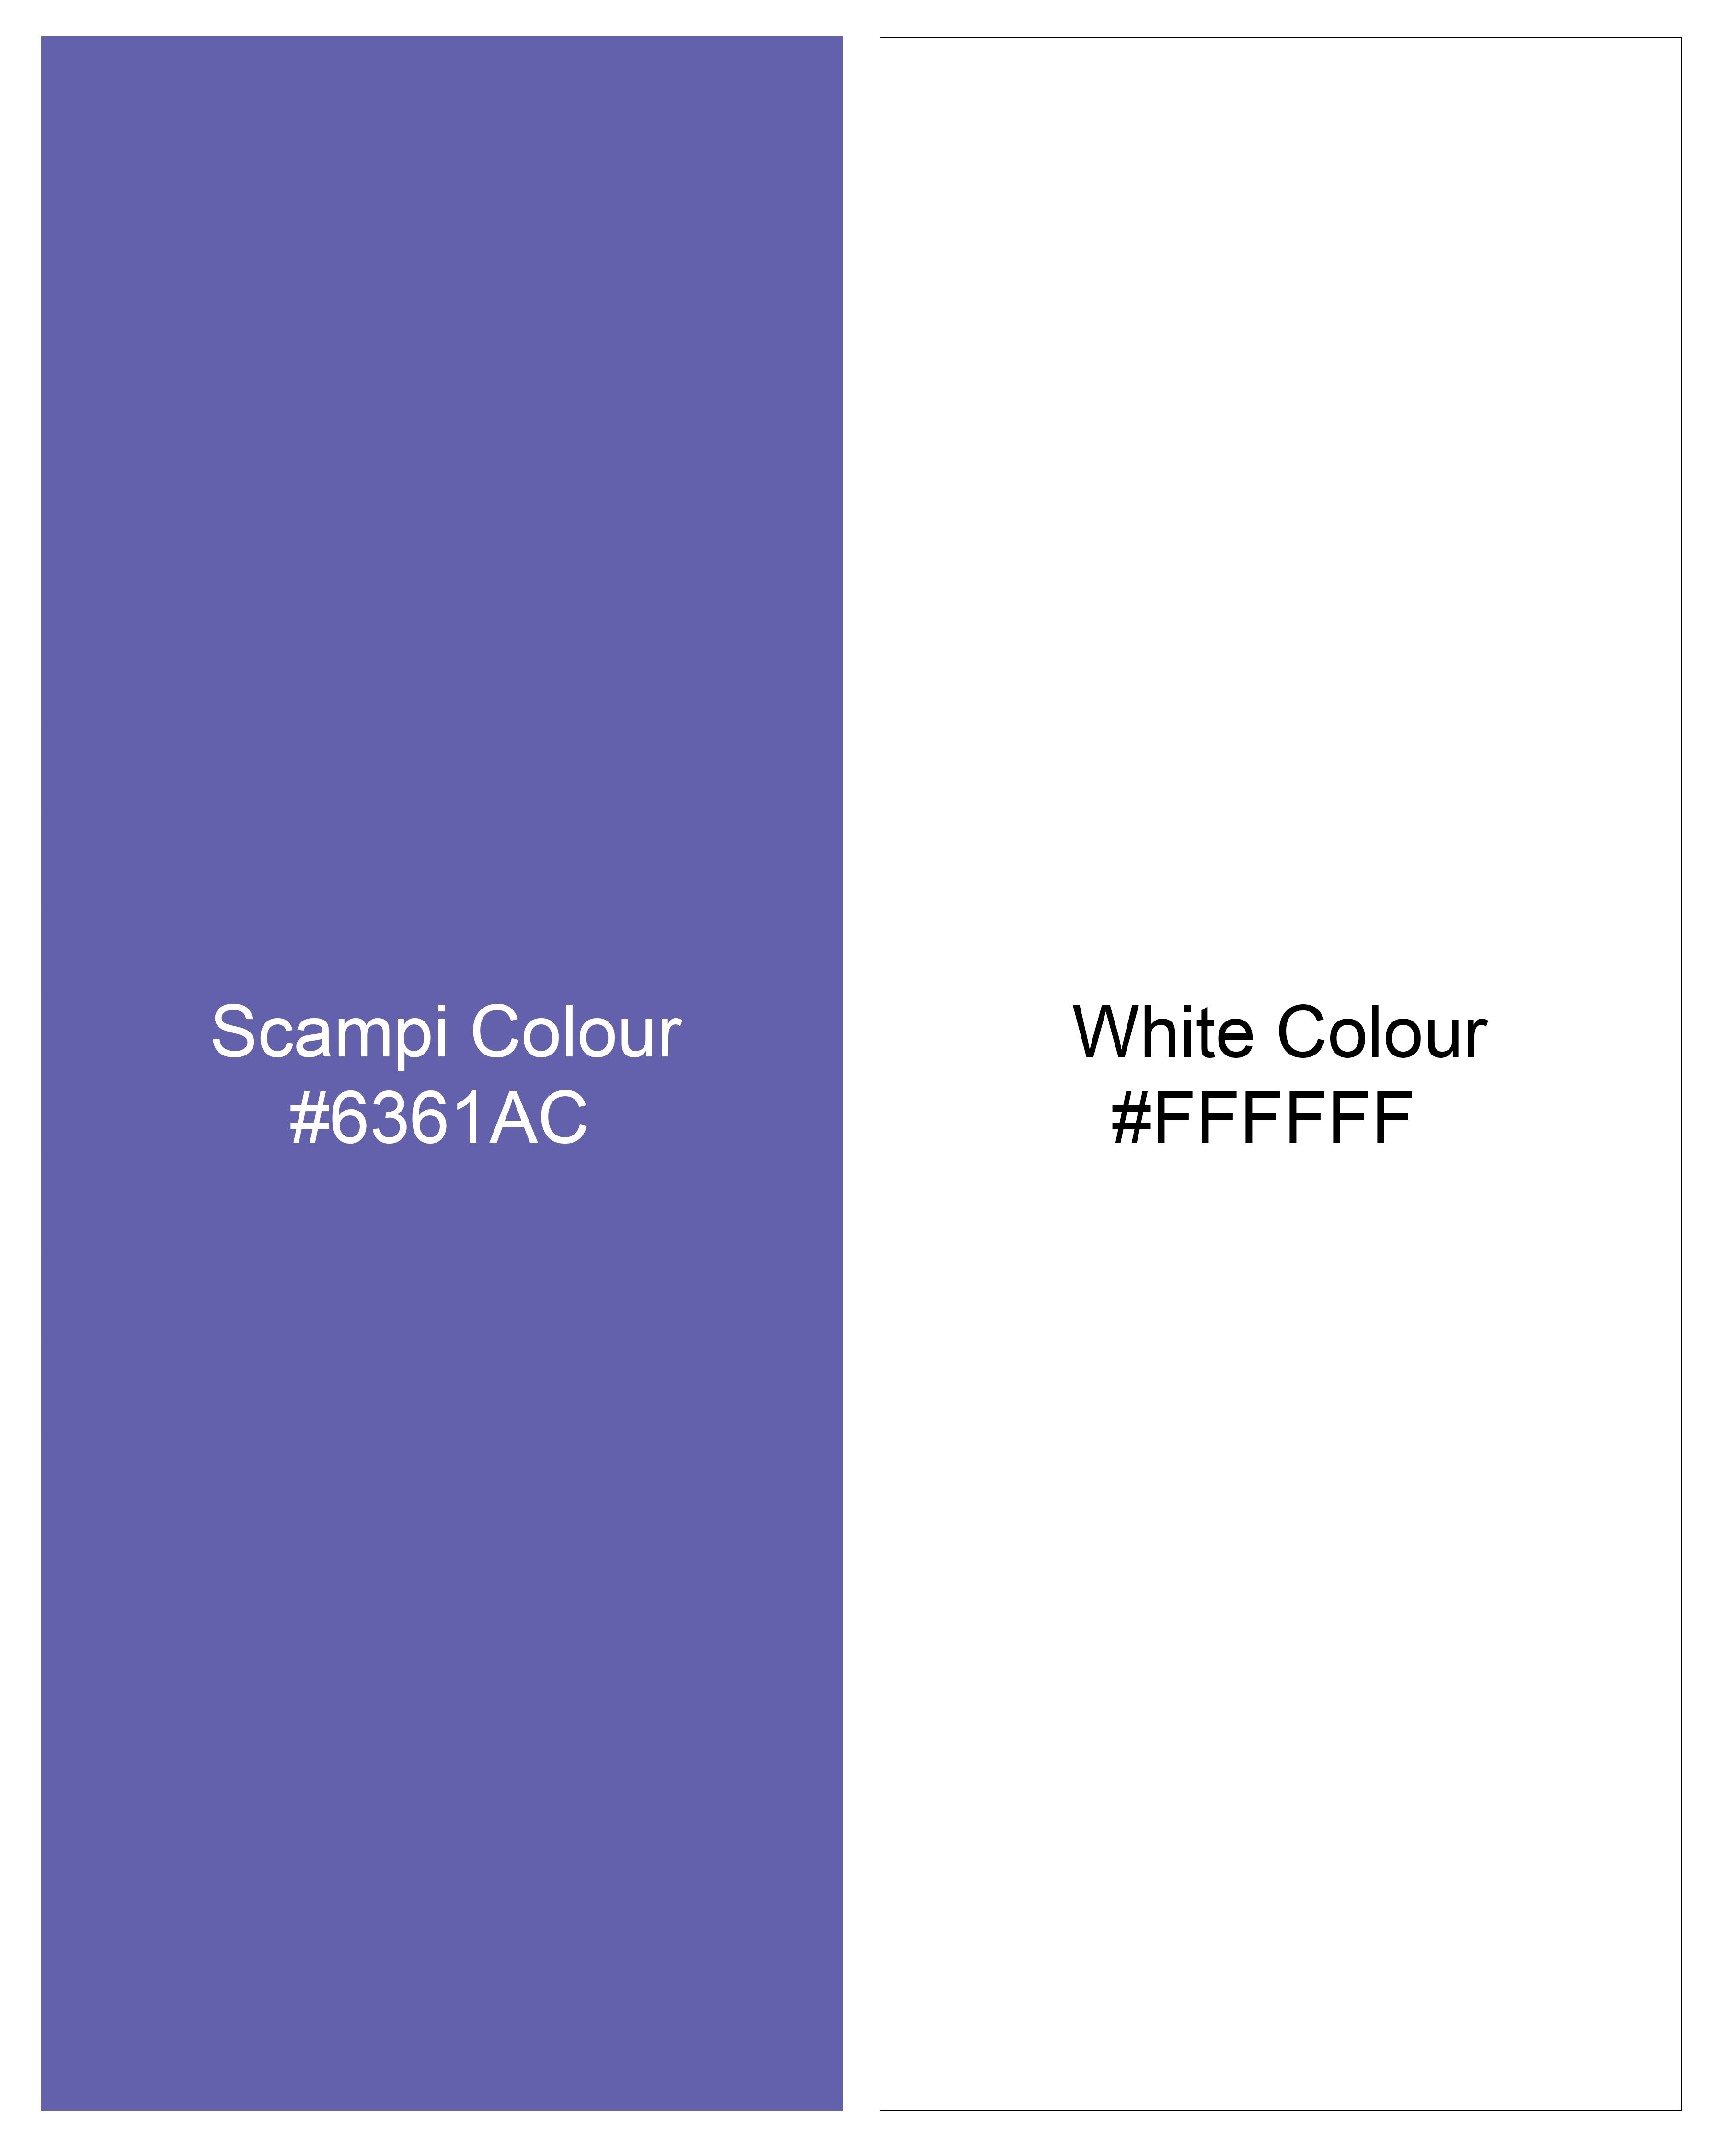 Bright White and Scampi Blue Striped Premium Cotton Shorts SR251-28, SR251-30, SR251-32, SR251-34, SR251-36, SR251-38, SR251-40, SR251-42, SR251-44